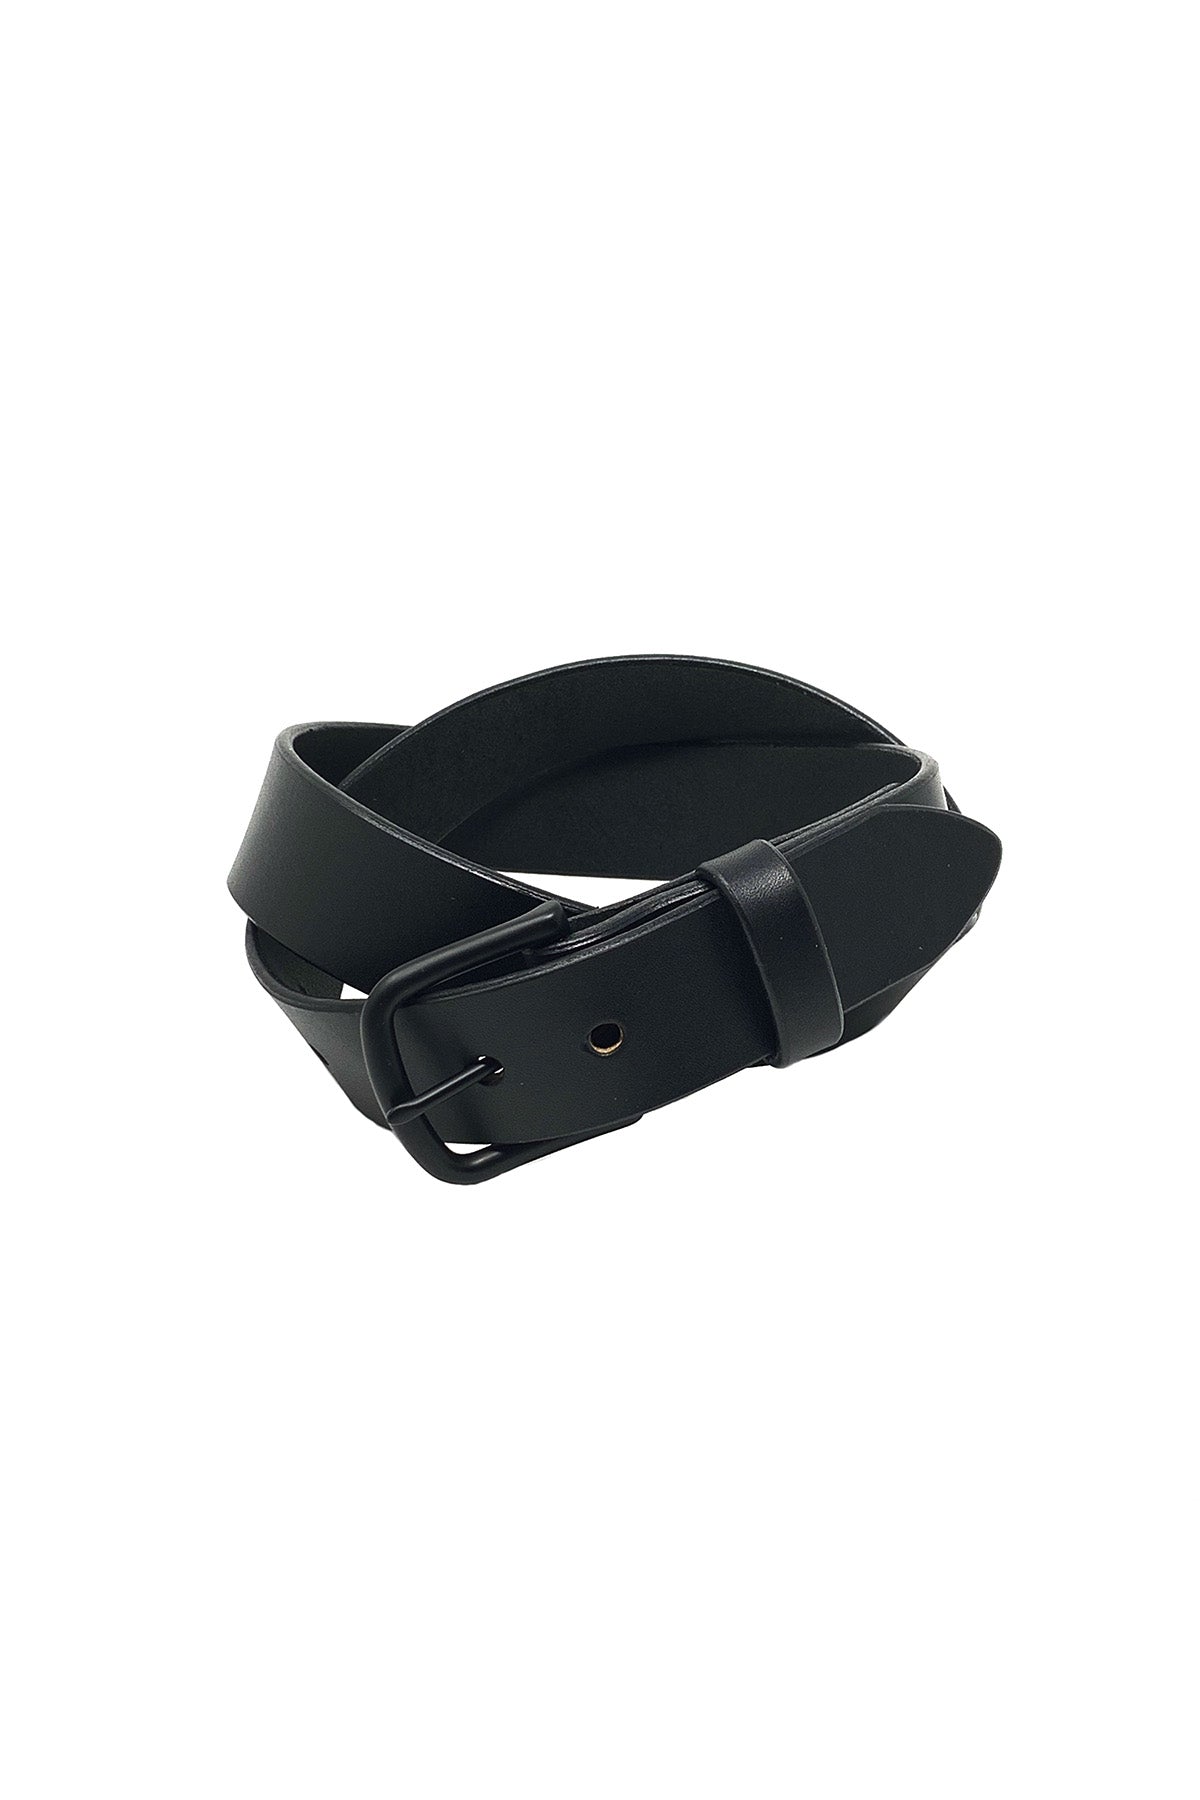 Last State Leather - Paniolo 1.5" Belt - Black/Black